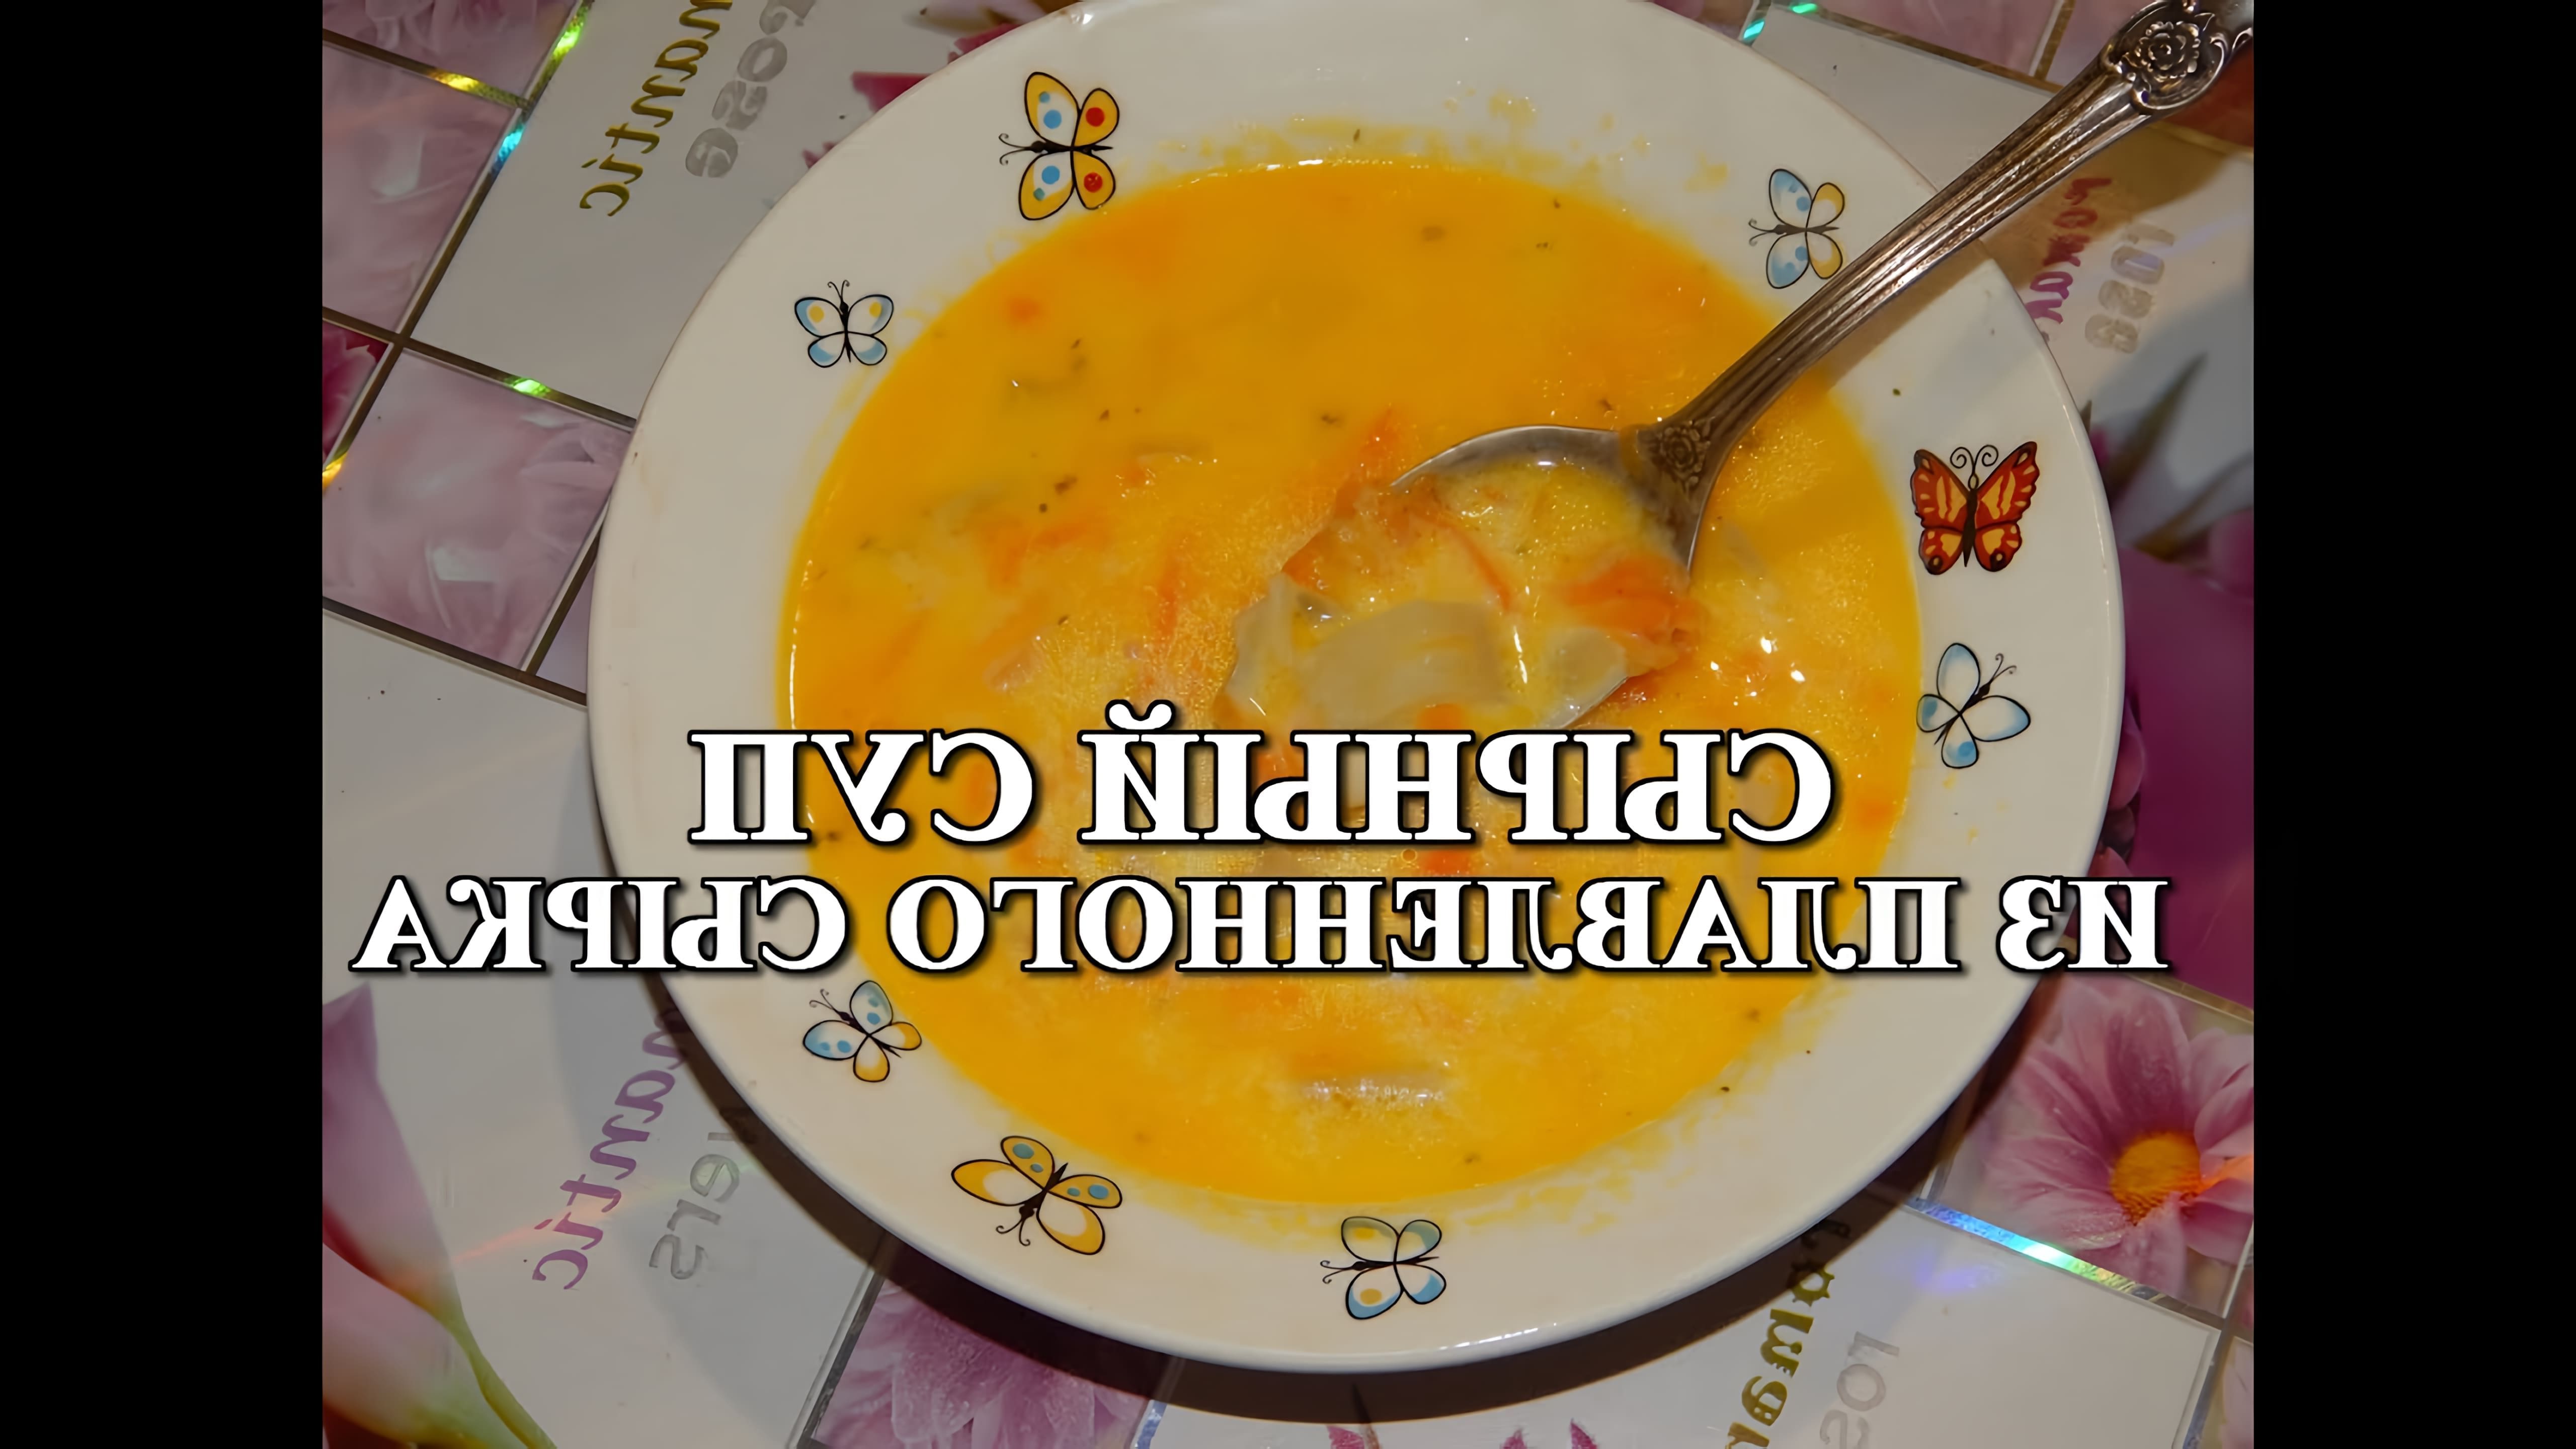 В данном видео демонстрируется процесс приготовления сырного супа из плавленного сырка